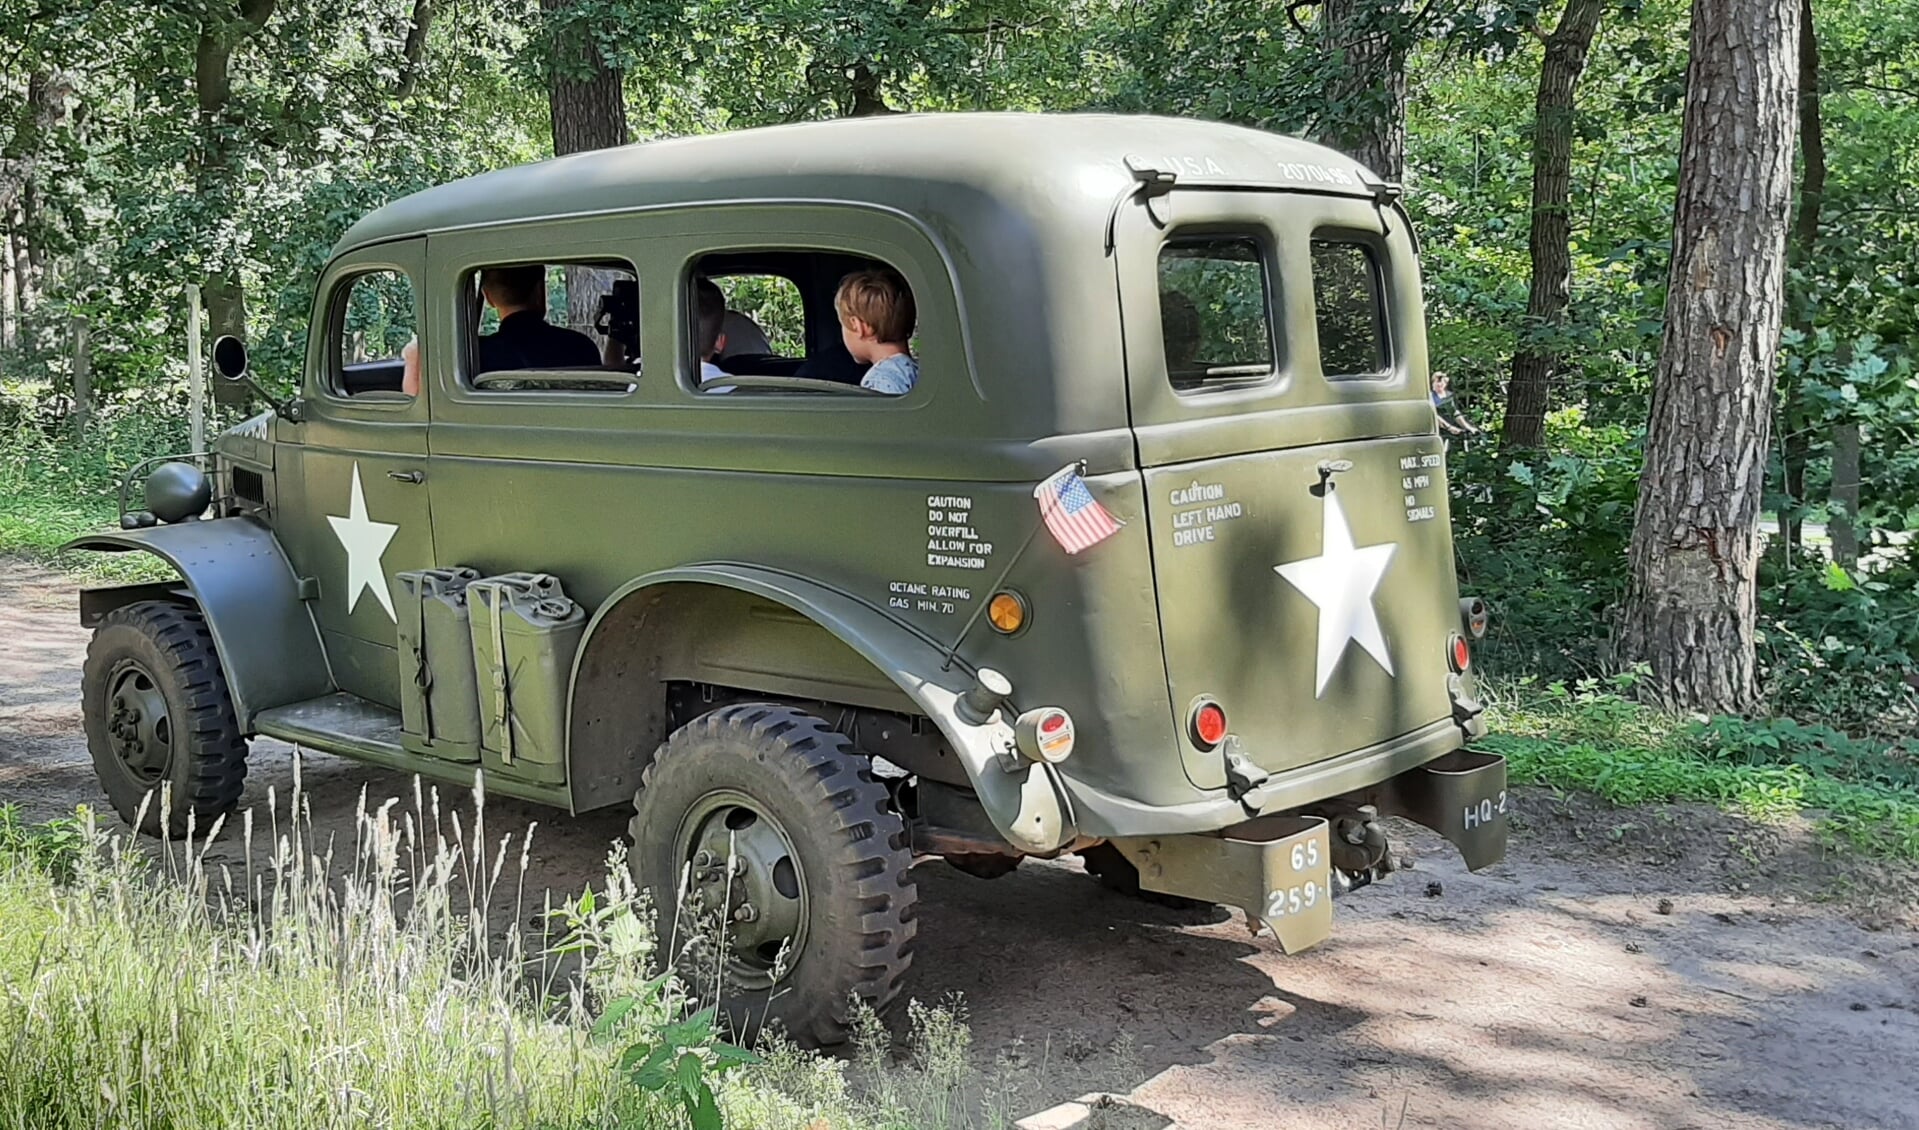 Dodge Carryall, het historische voertuig waarin tijdens de meivakantie meegereden kan worden.